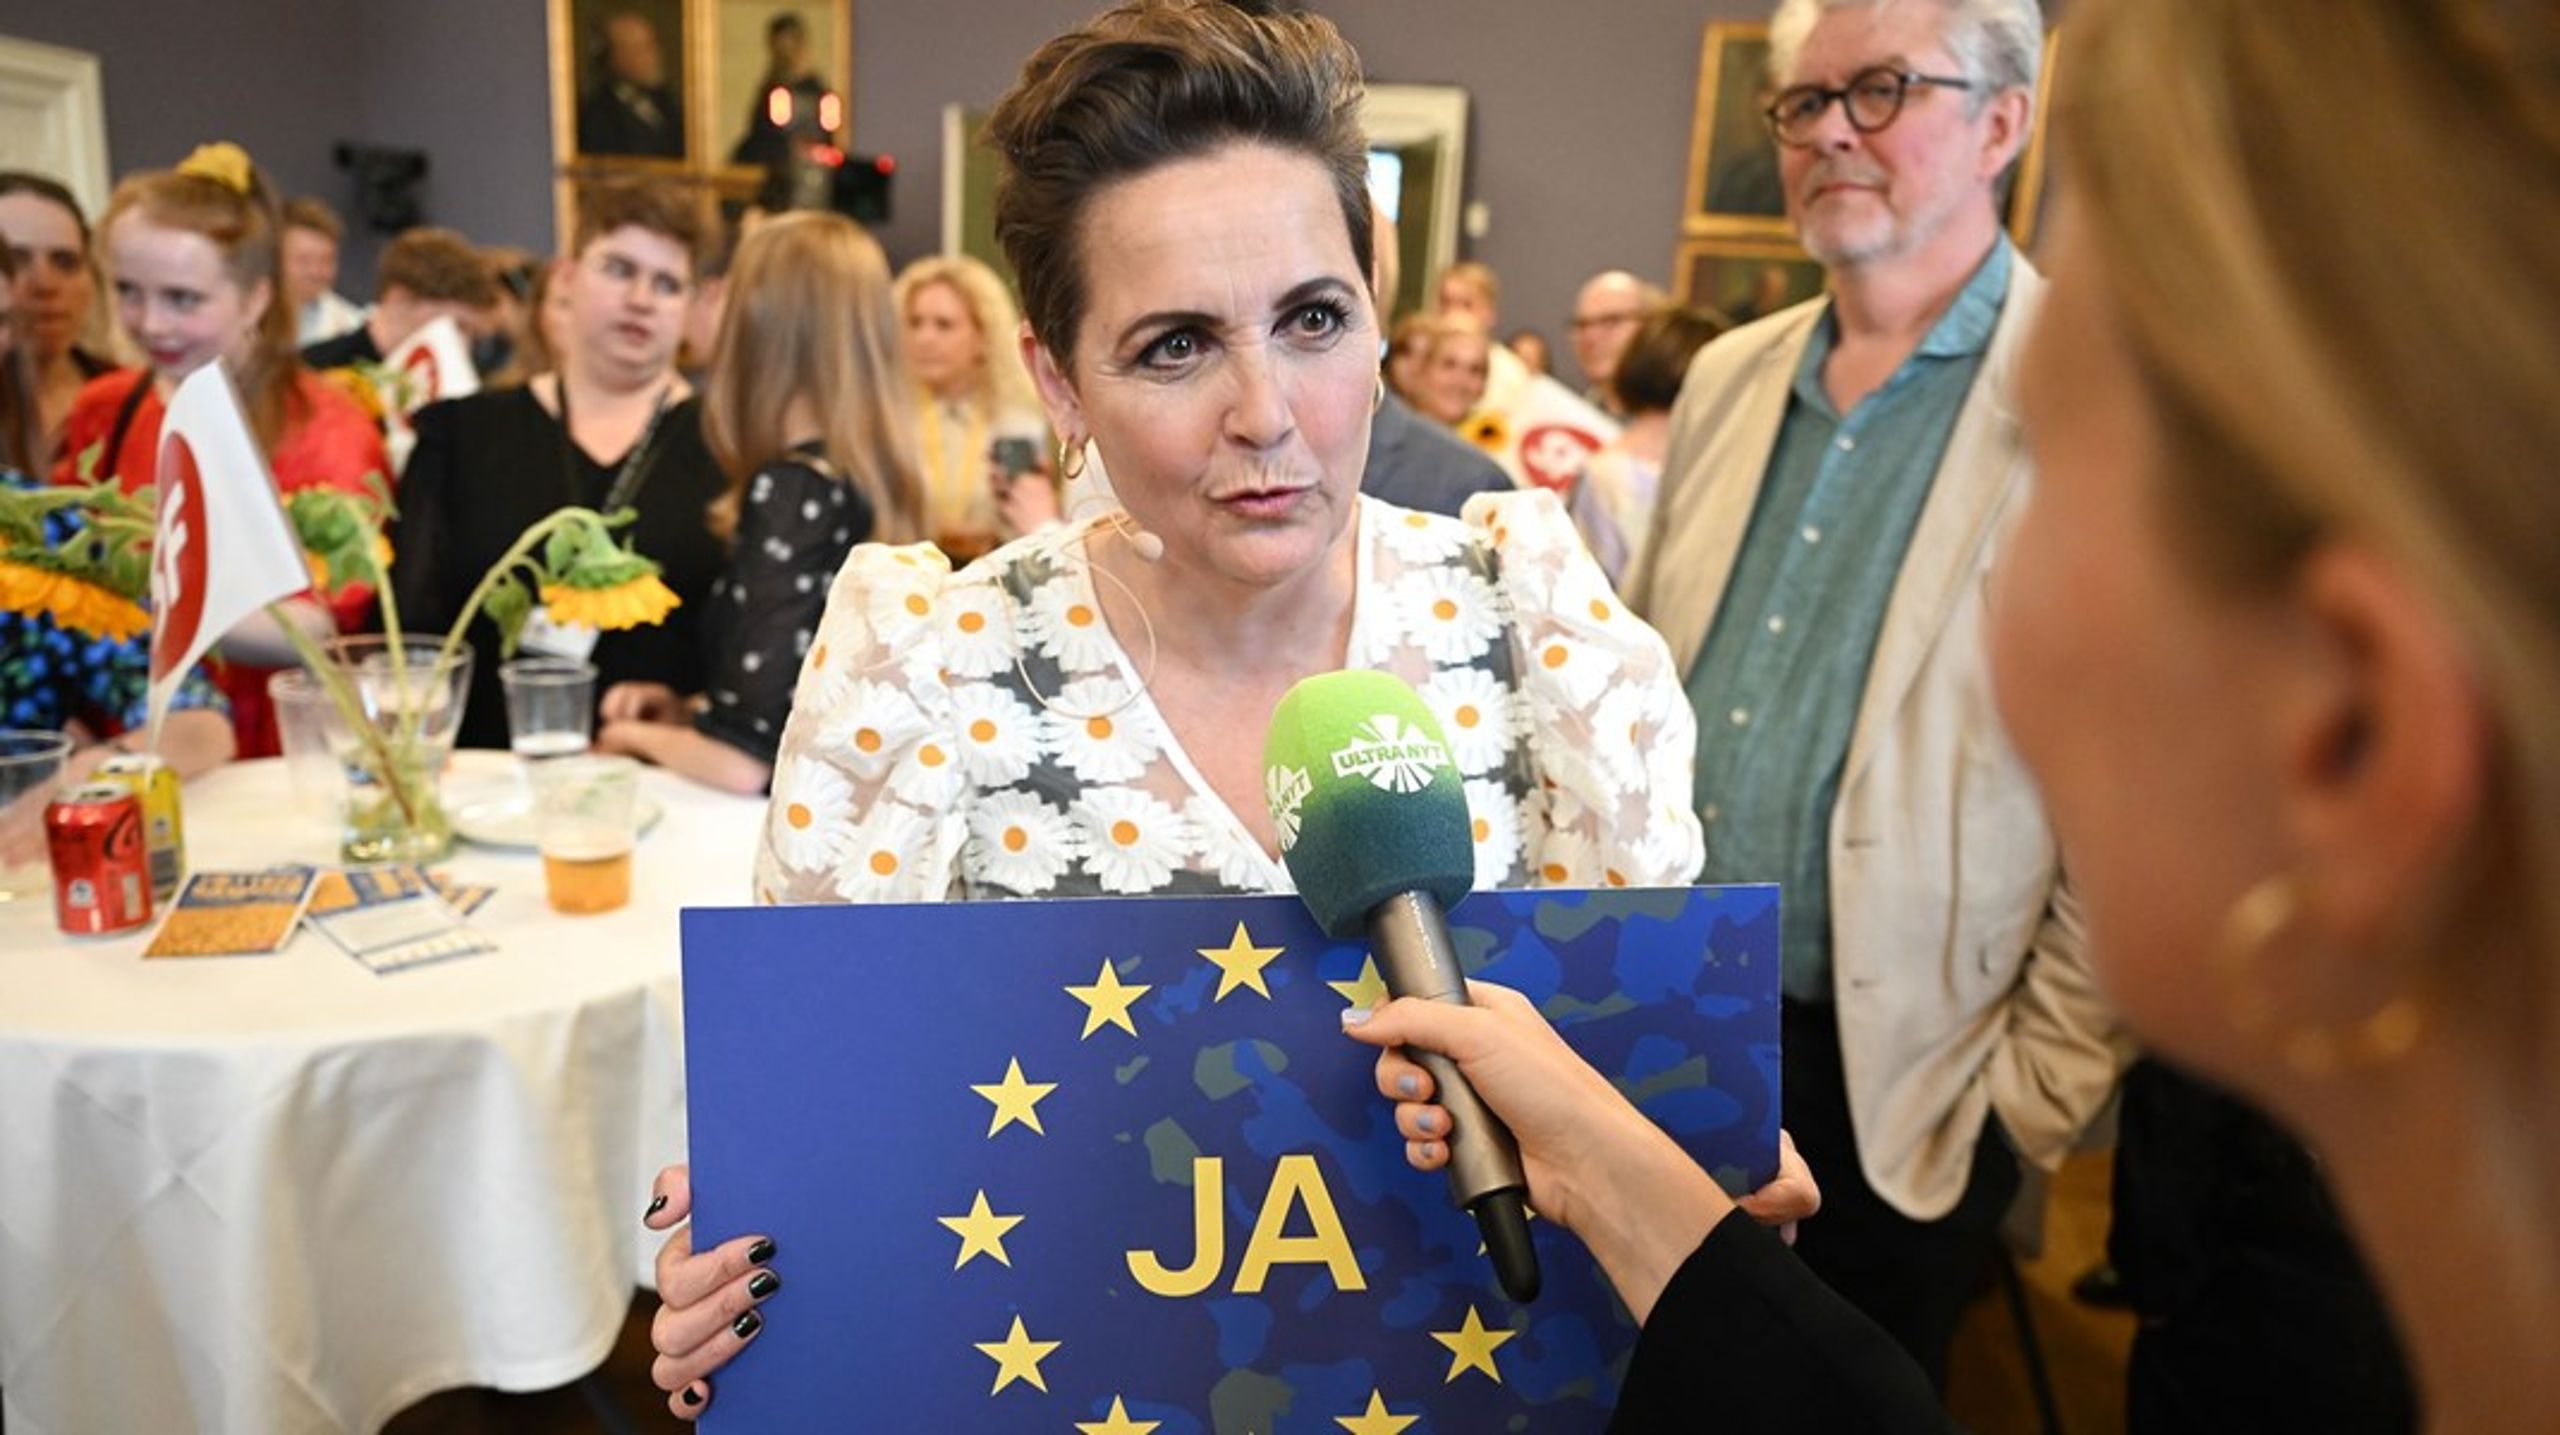 SF's leder, Pia Olsen Dyhr, på Christiansborg, da danskerne i juni stemte om forsvarsforbeholdet. Det skal dog ikke kun være ved den slags specielle lejligheder, at EU-politikken kommer i højsædet i Folketinget, lyder det fra udvalg nedsat til at granske Borgens EU-indflydelse.